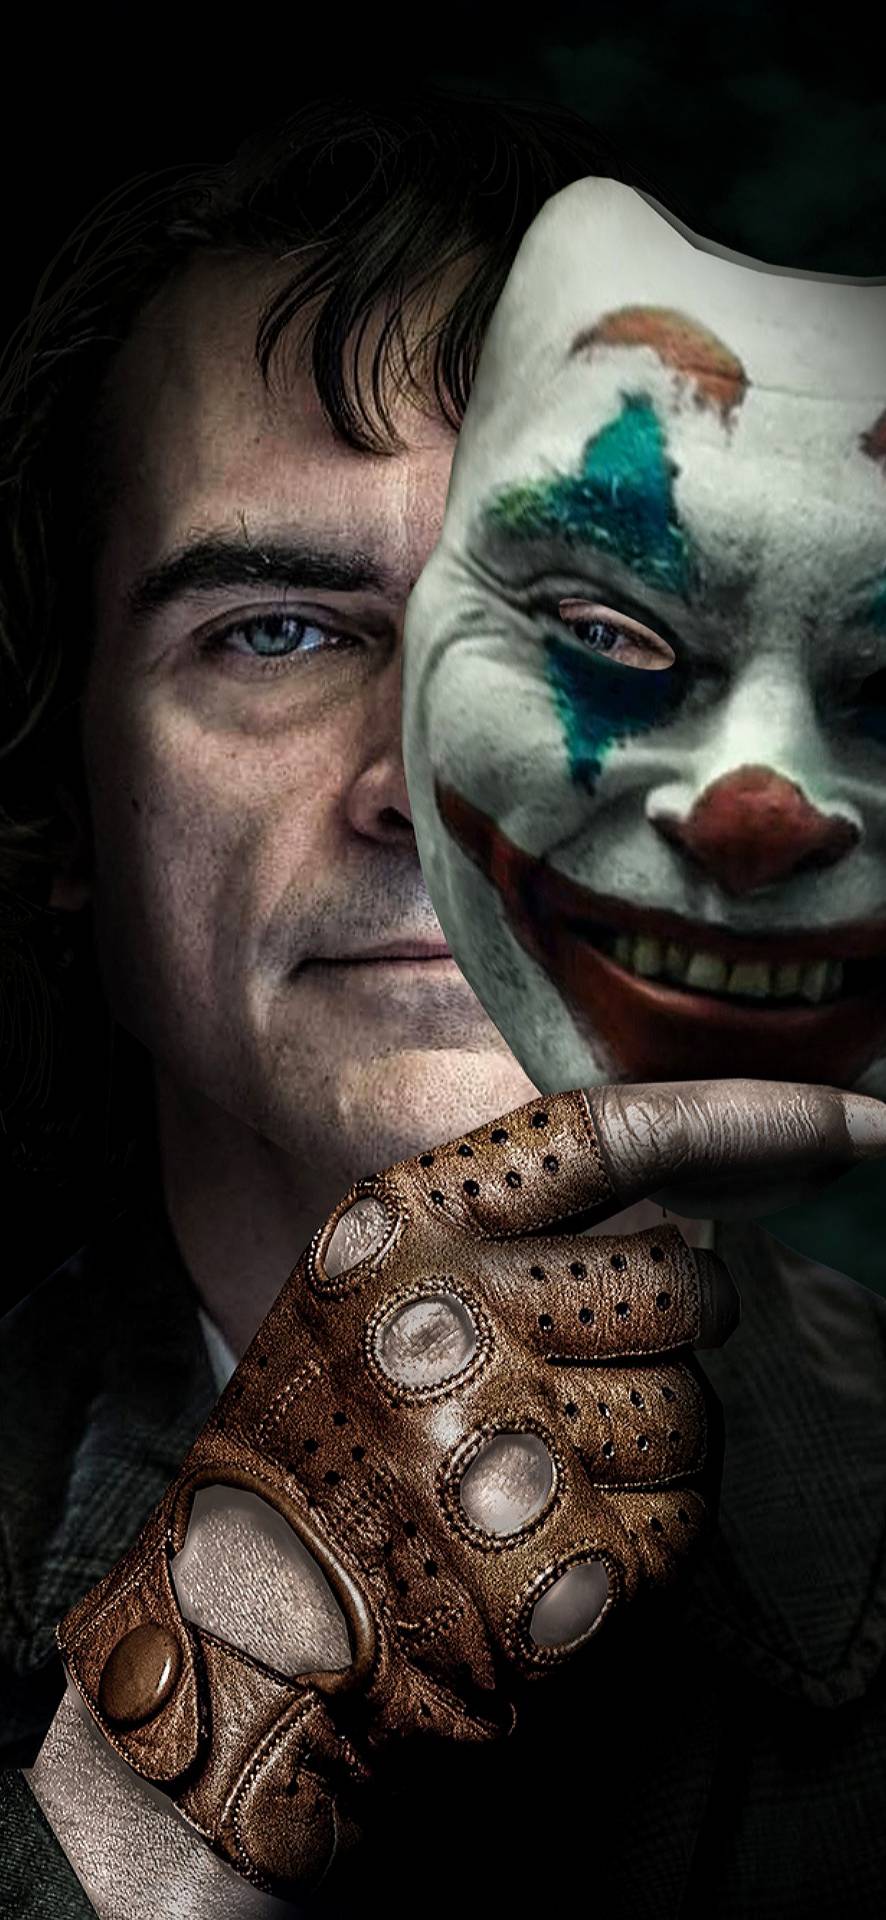 Joker 2019 Images - Put On A Happy Face Joker - HD Wallpaper 